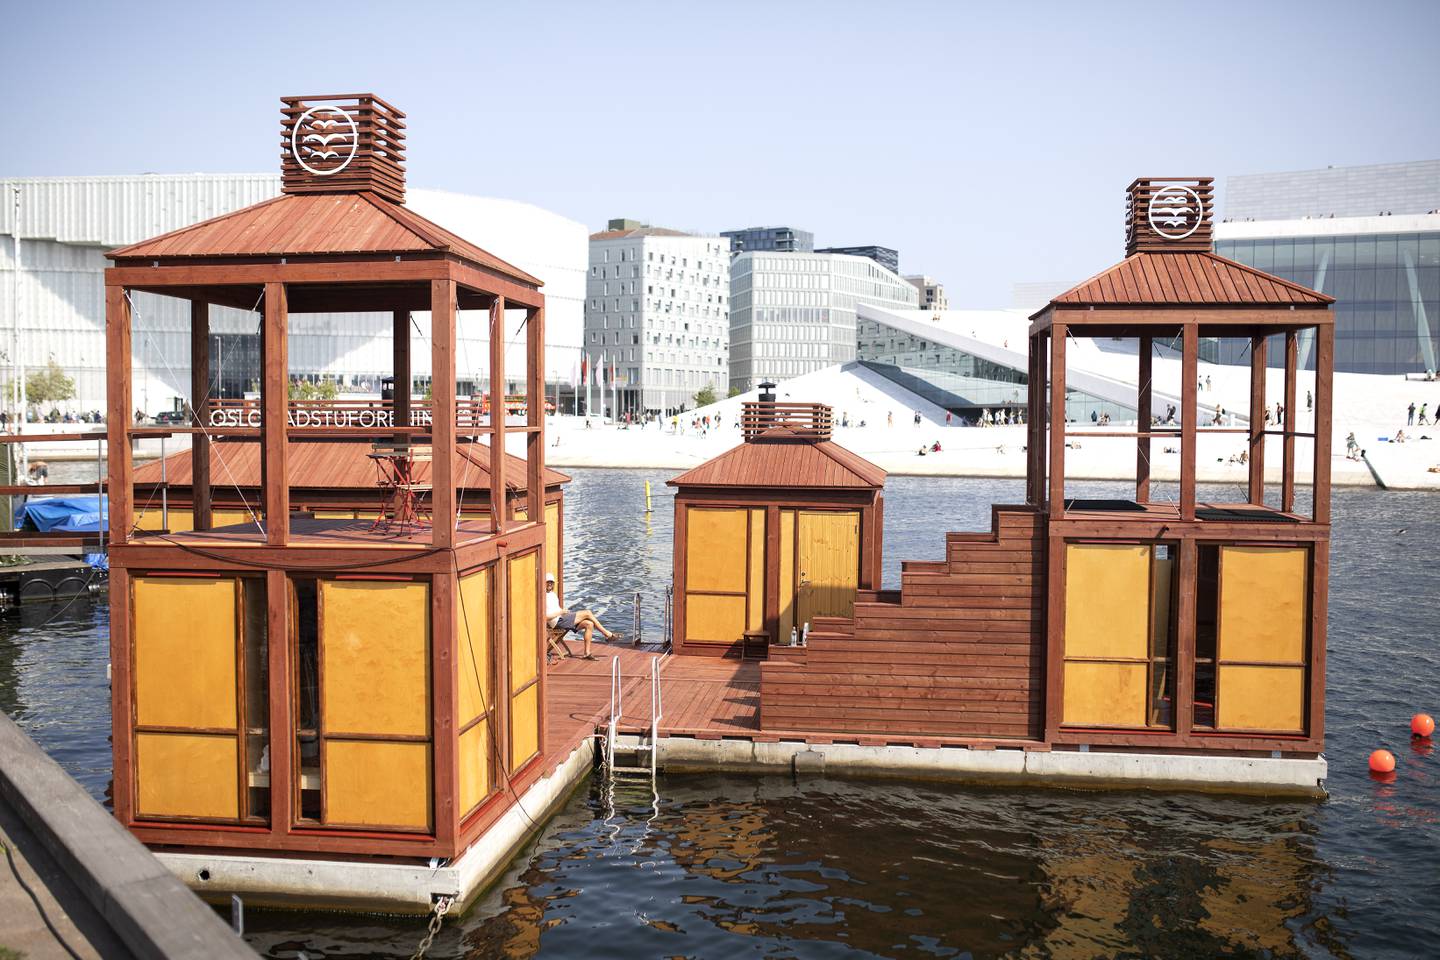 Bademaskinen, er det nyeste tilskuddet til Oslo Badstuforening. Navnet er hentet fra en badstue som lå i Oslofjorden på 1800 tallet, og det er den samme badstuen arkitektene har fått inspirasjon til saunaen fra.